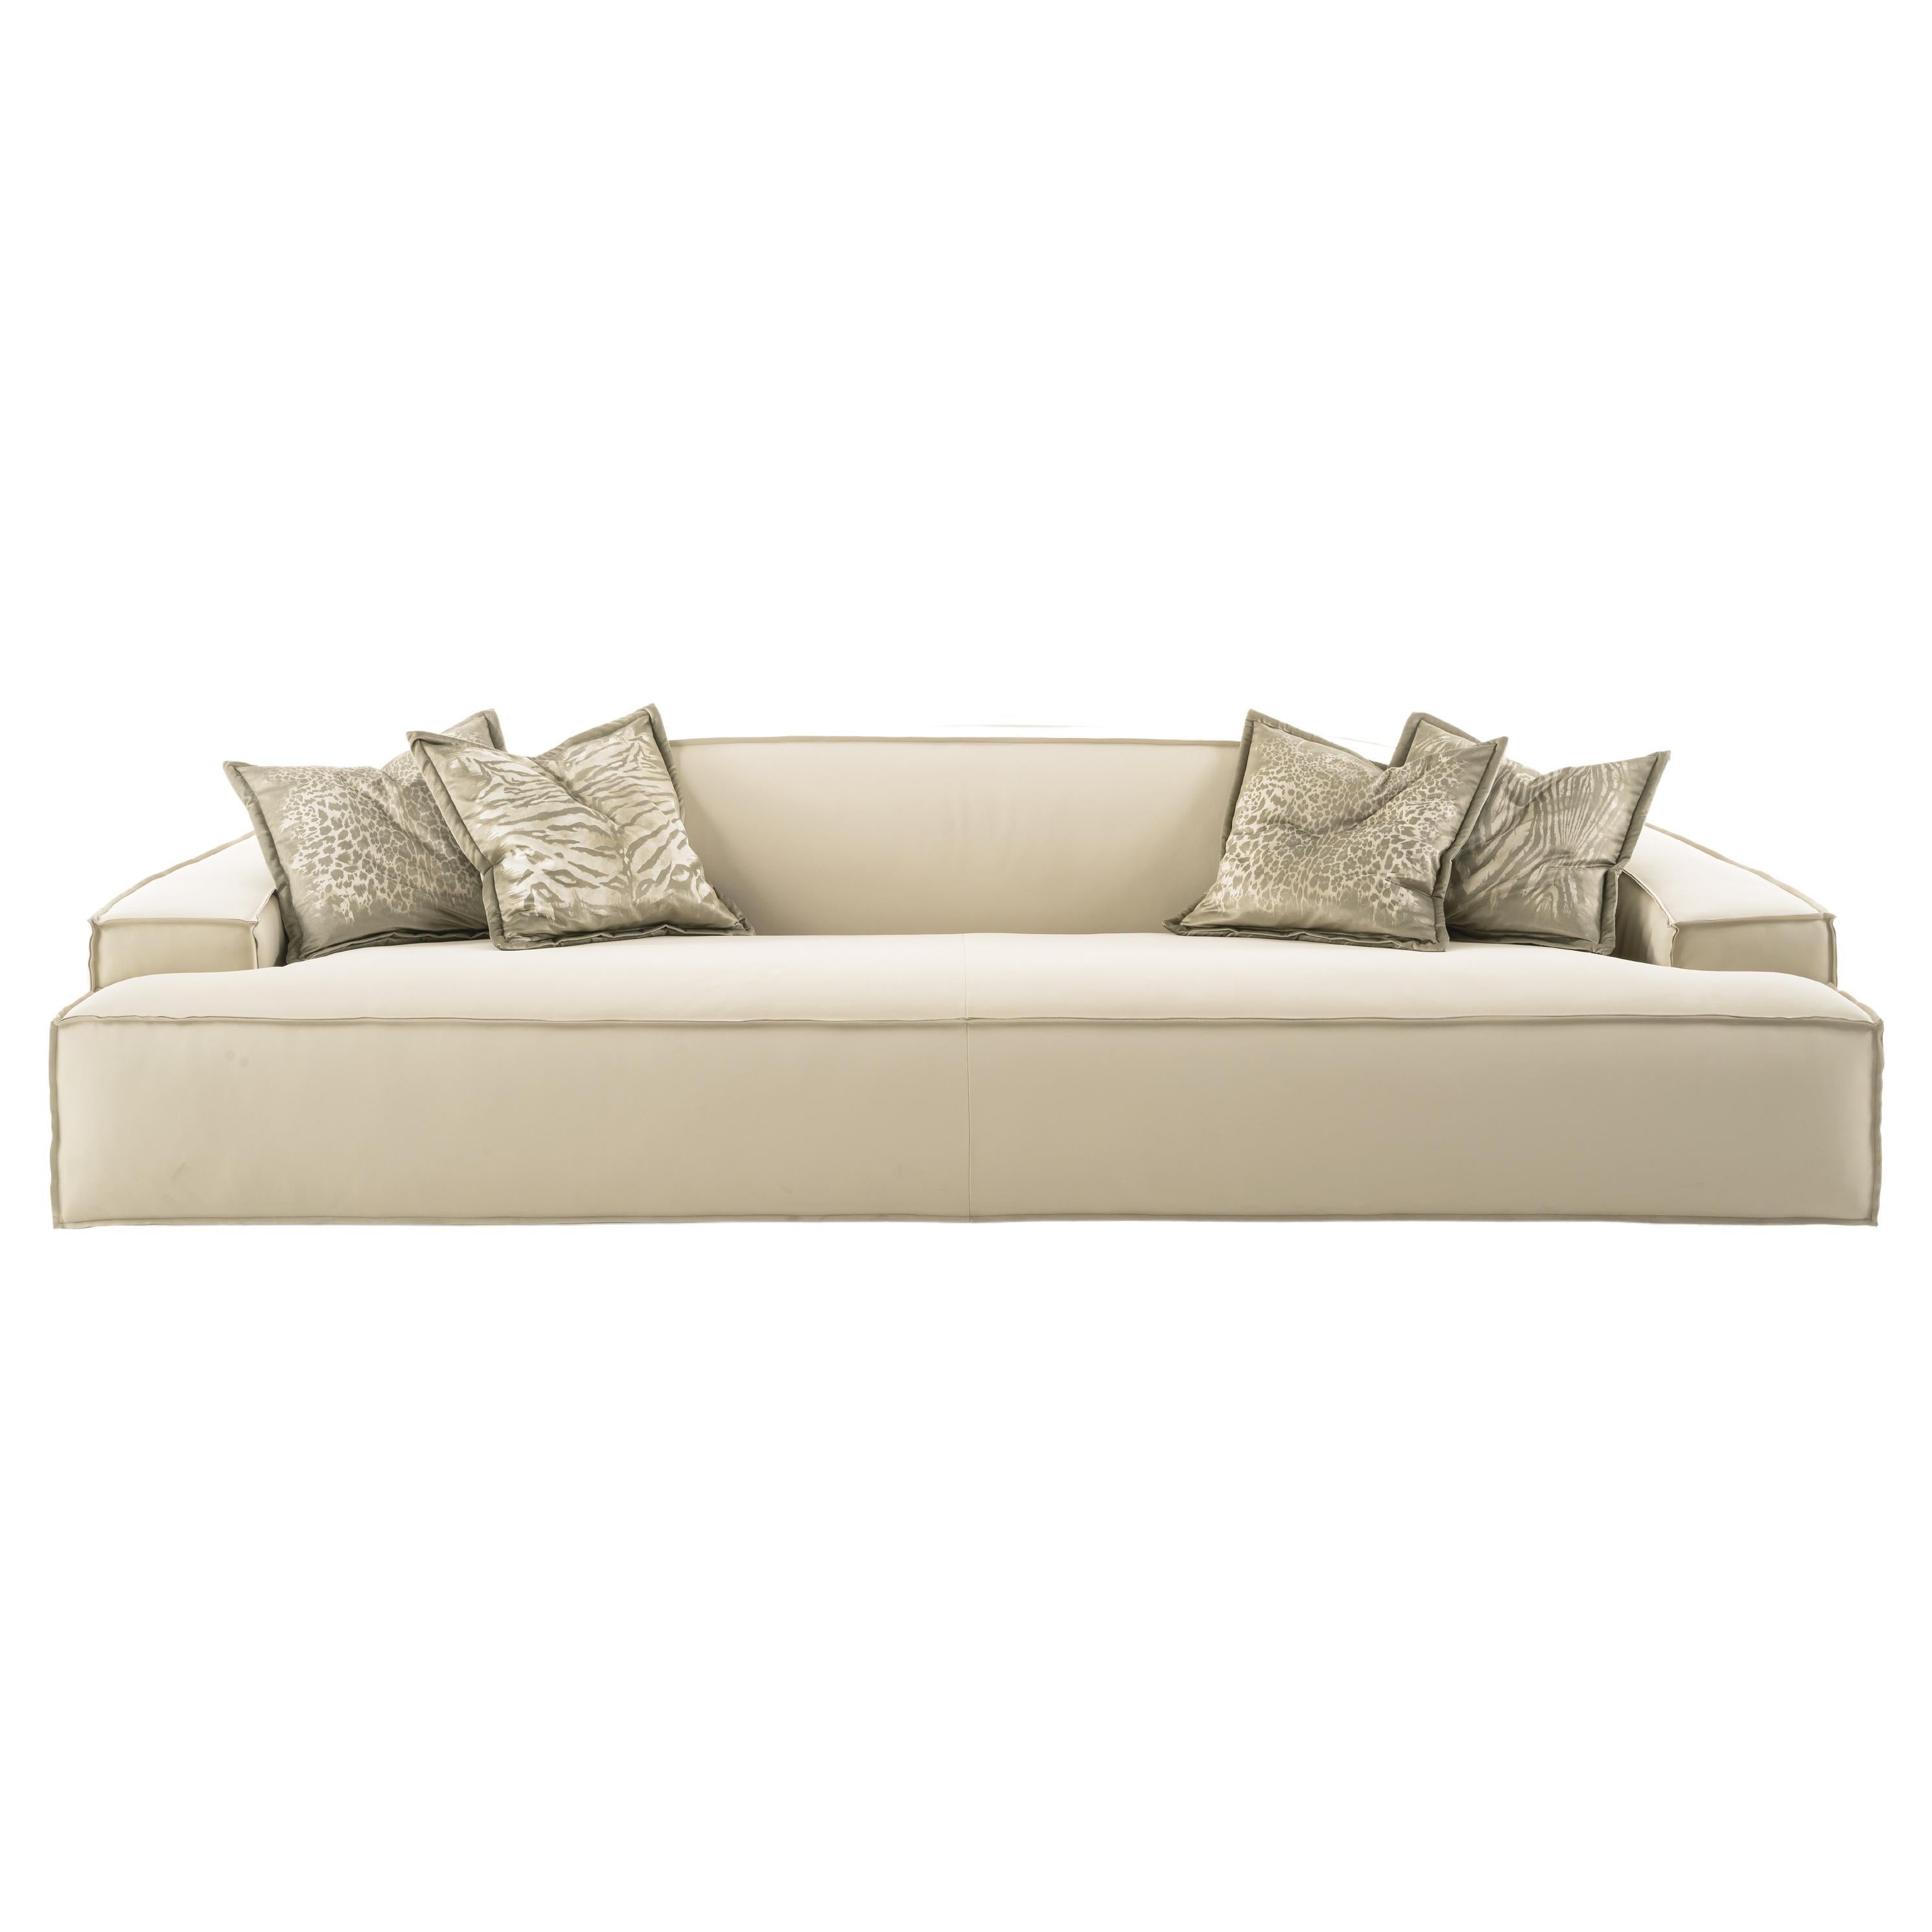 Assal-Sofa aus Leder des 21. Jahrhunderts von Roberto Cavalli Home Interiors